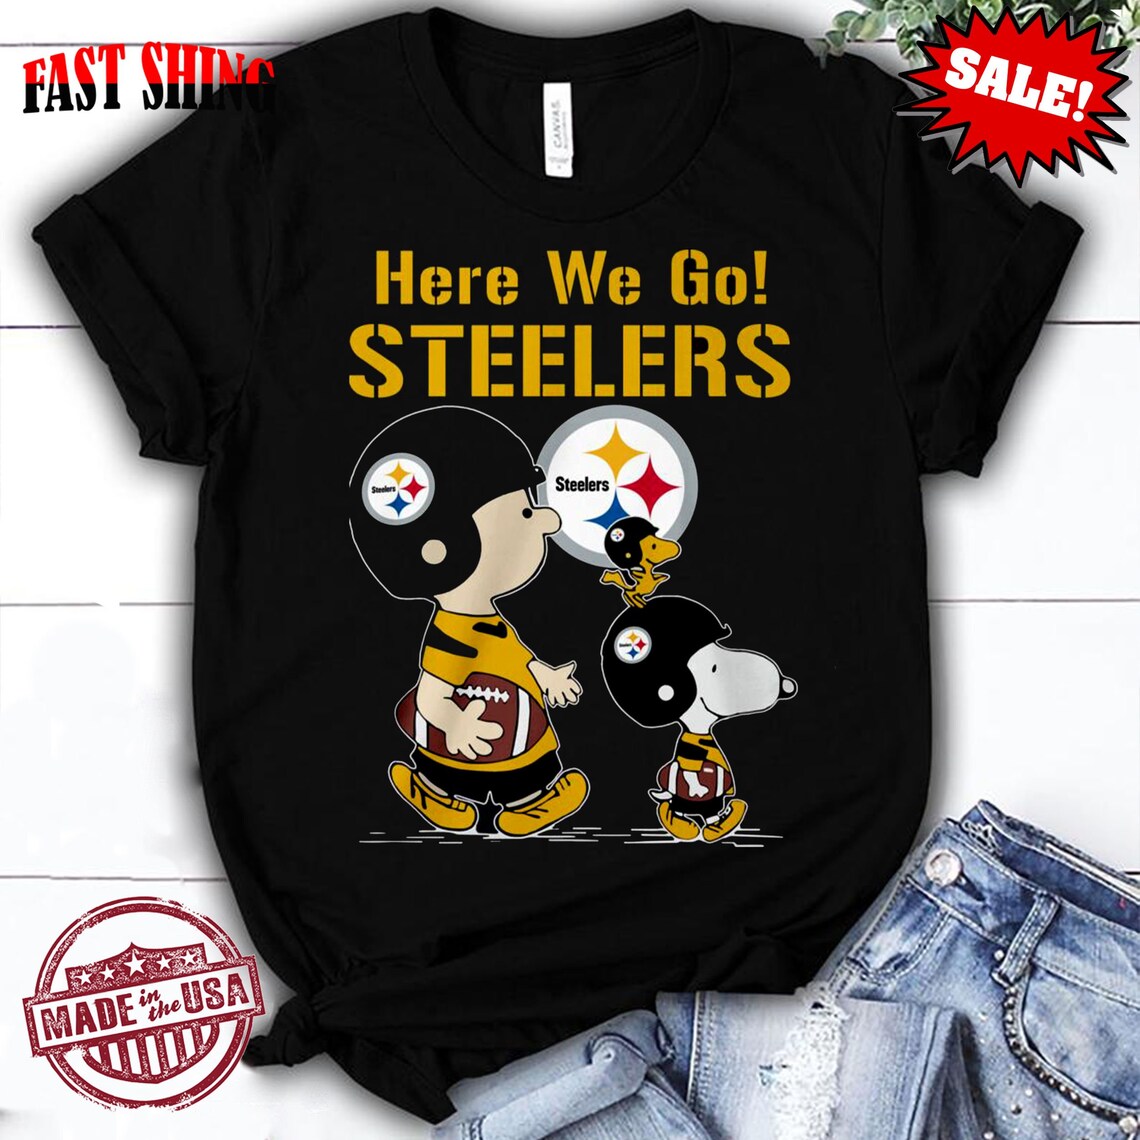 Here We Go Steelers Tshirt Pittsburgh Steelers Tshirt Fan Etsy